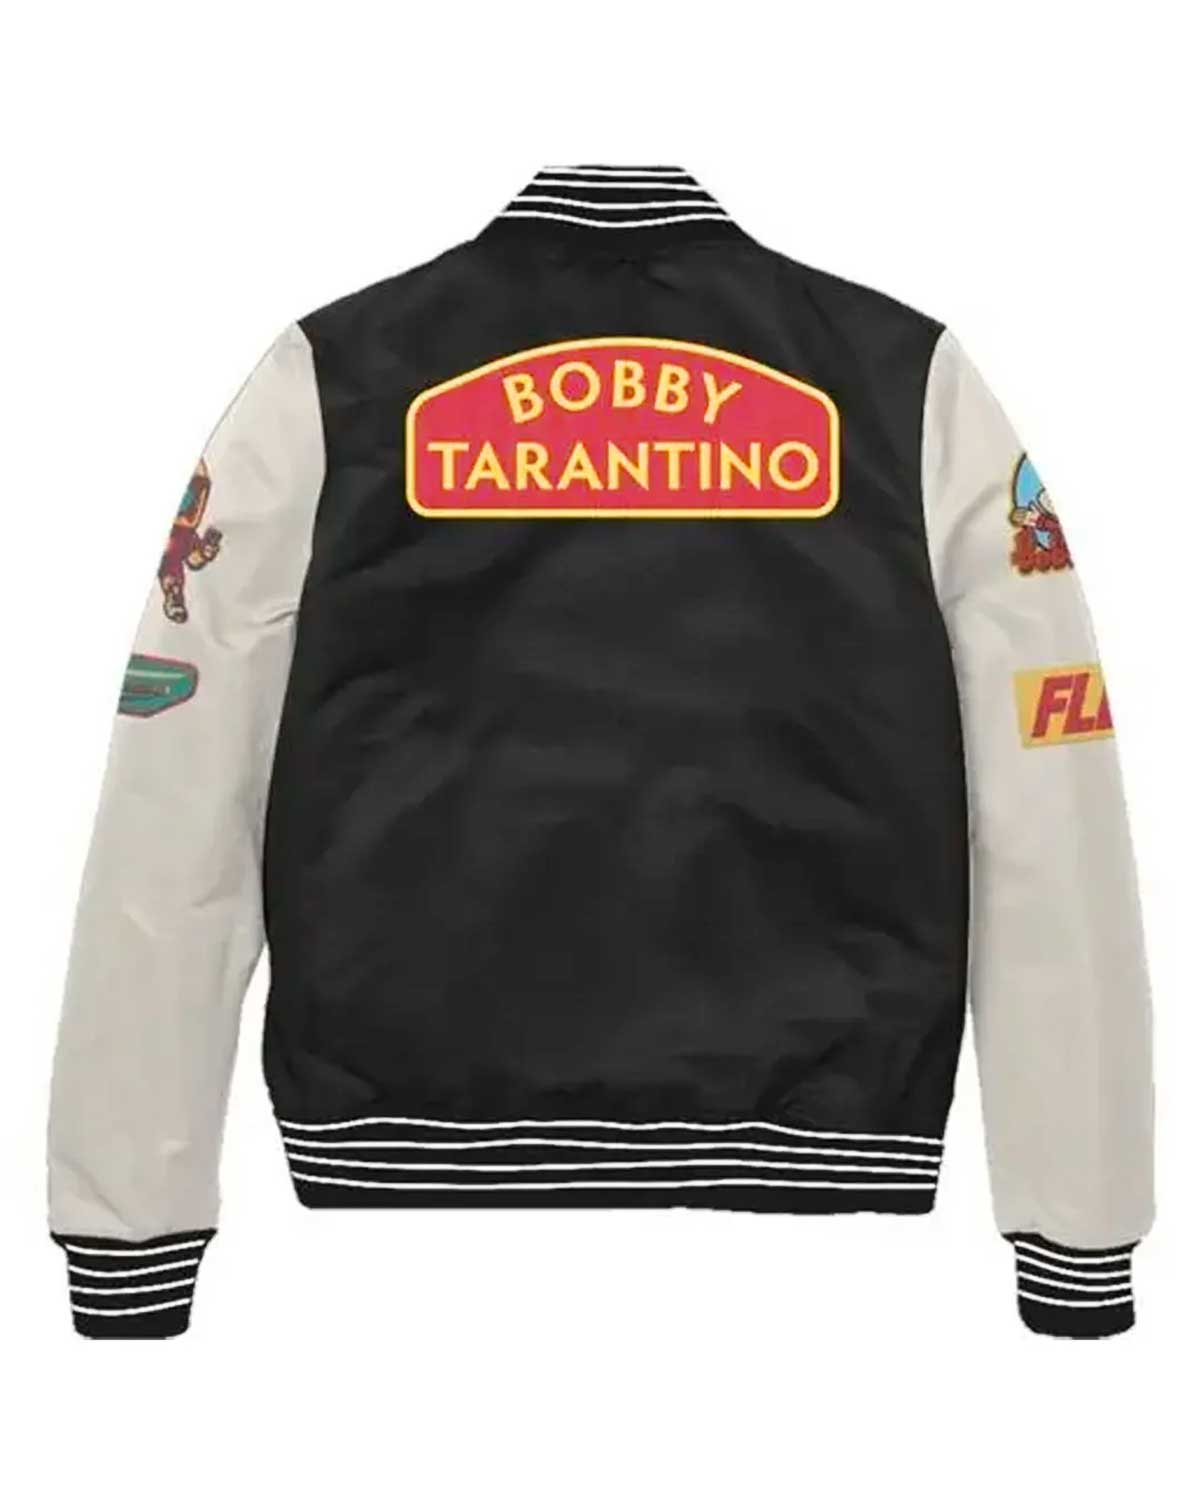 Bobby Tarantino Black And White Letterman Jacket | Elite Jacket